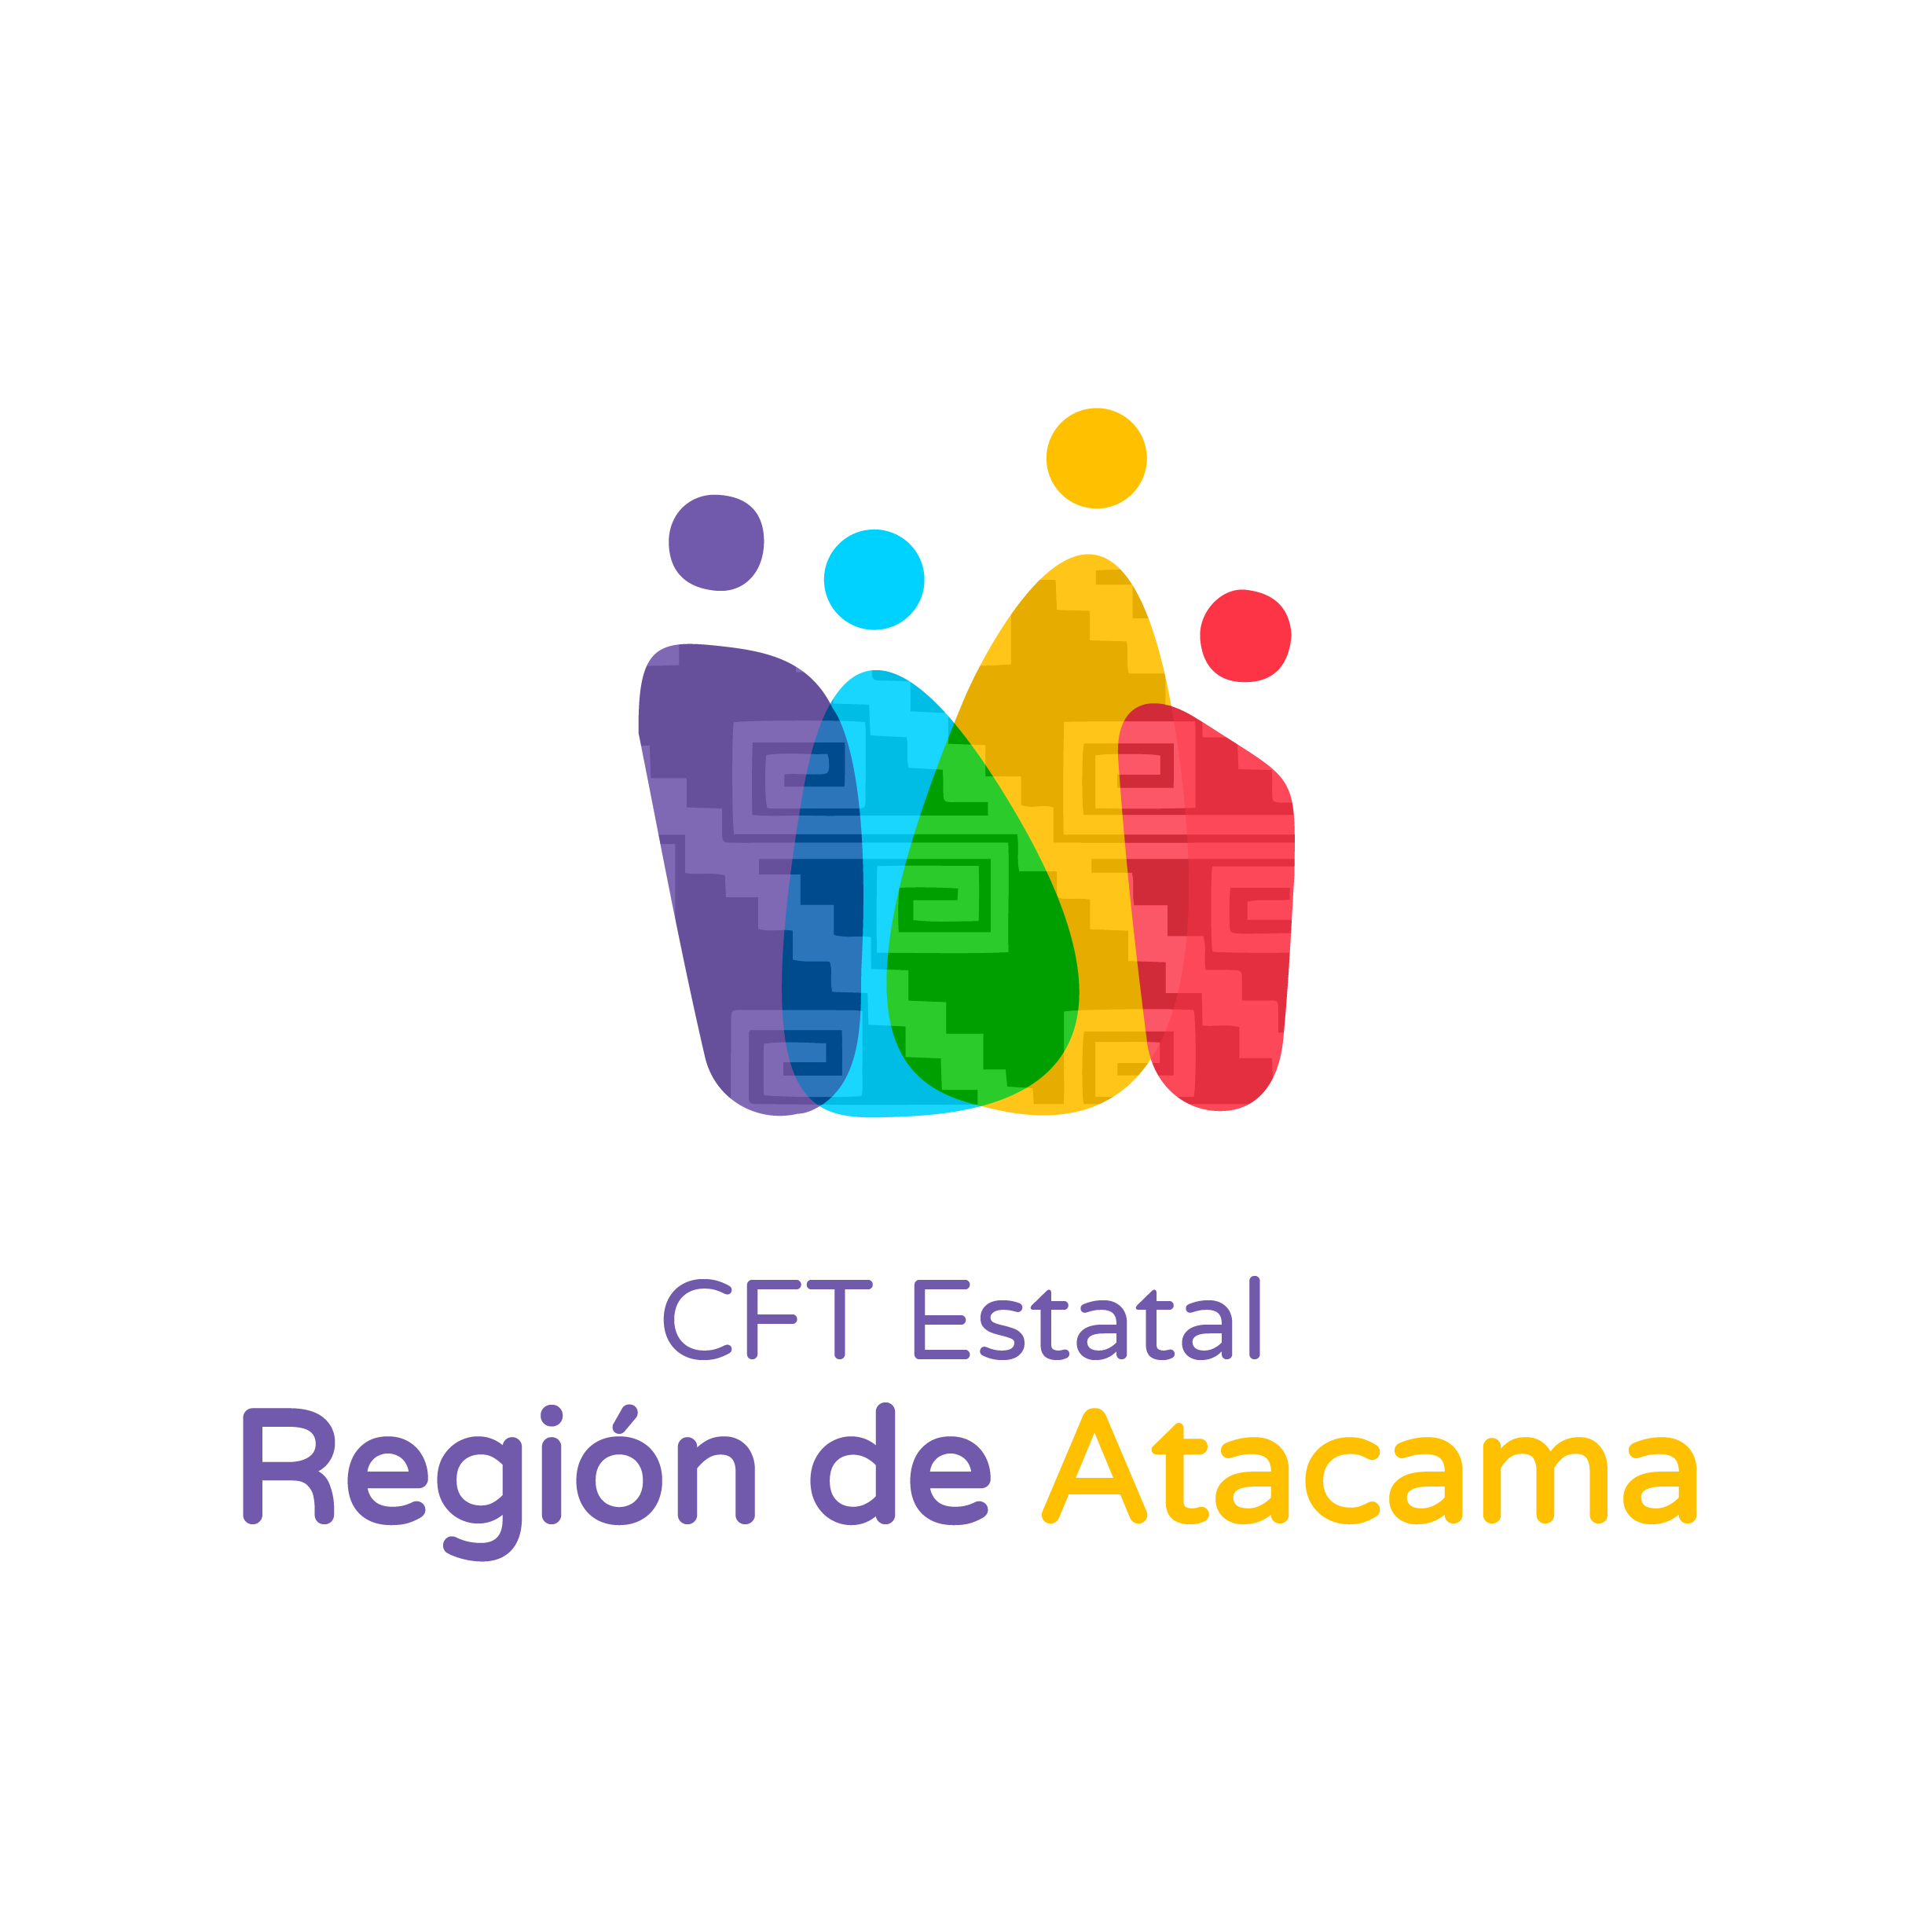 C.F.T. de la Región de Atacama